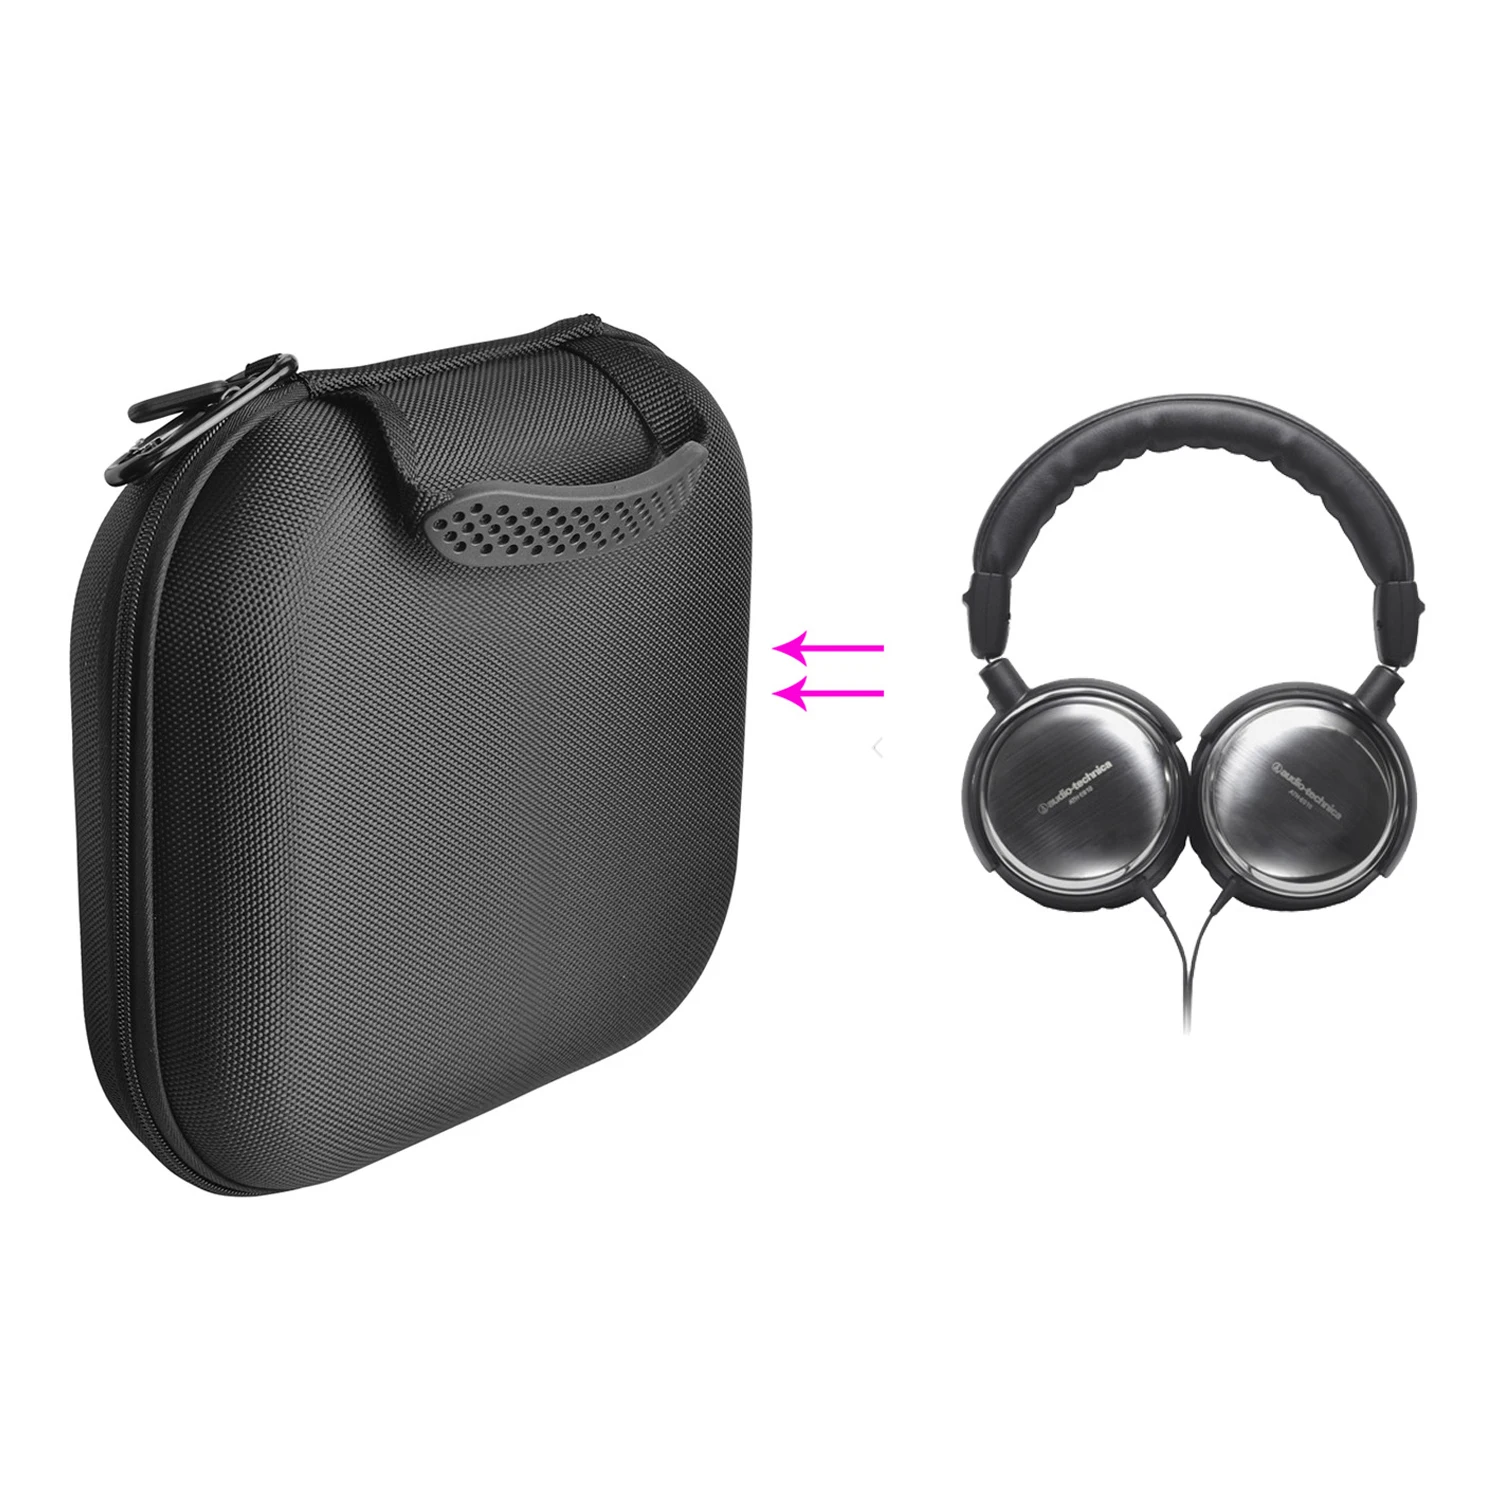 

Противоударный защитный чехол из ЭВА для наушников Audio Technica ATH-ES10, чехол для хранения гарнитуры, сумка для переноски